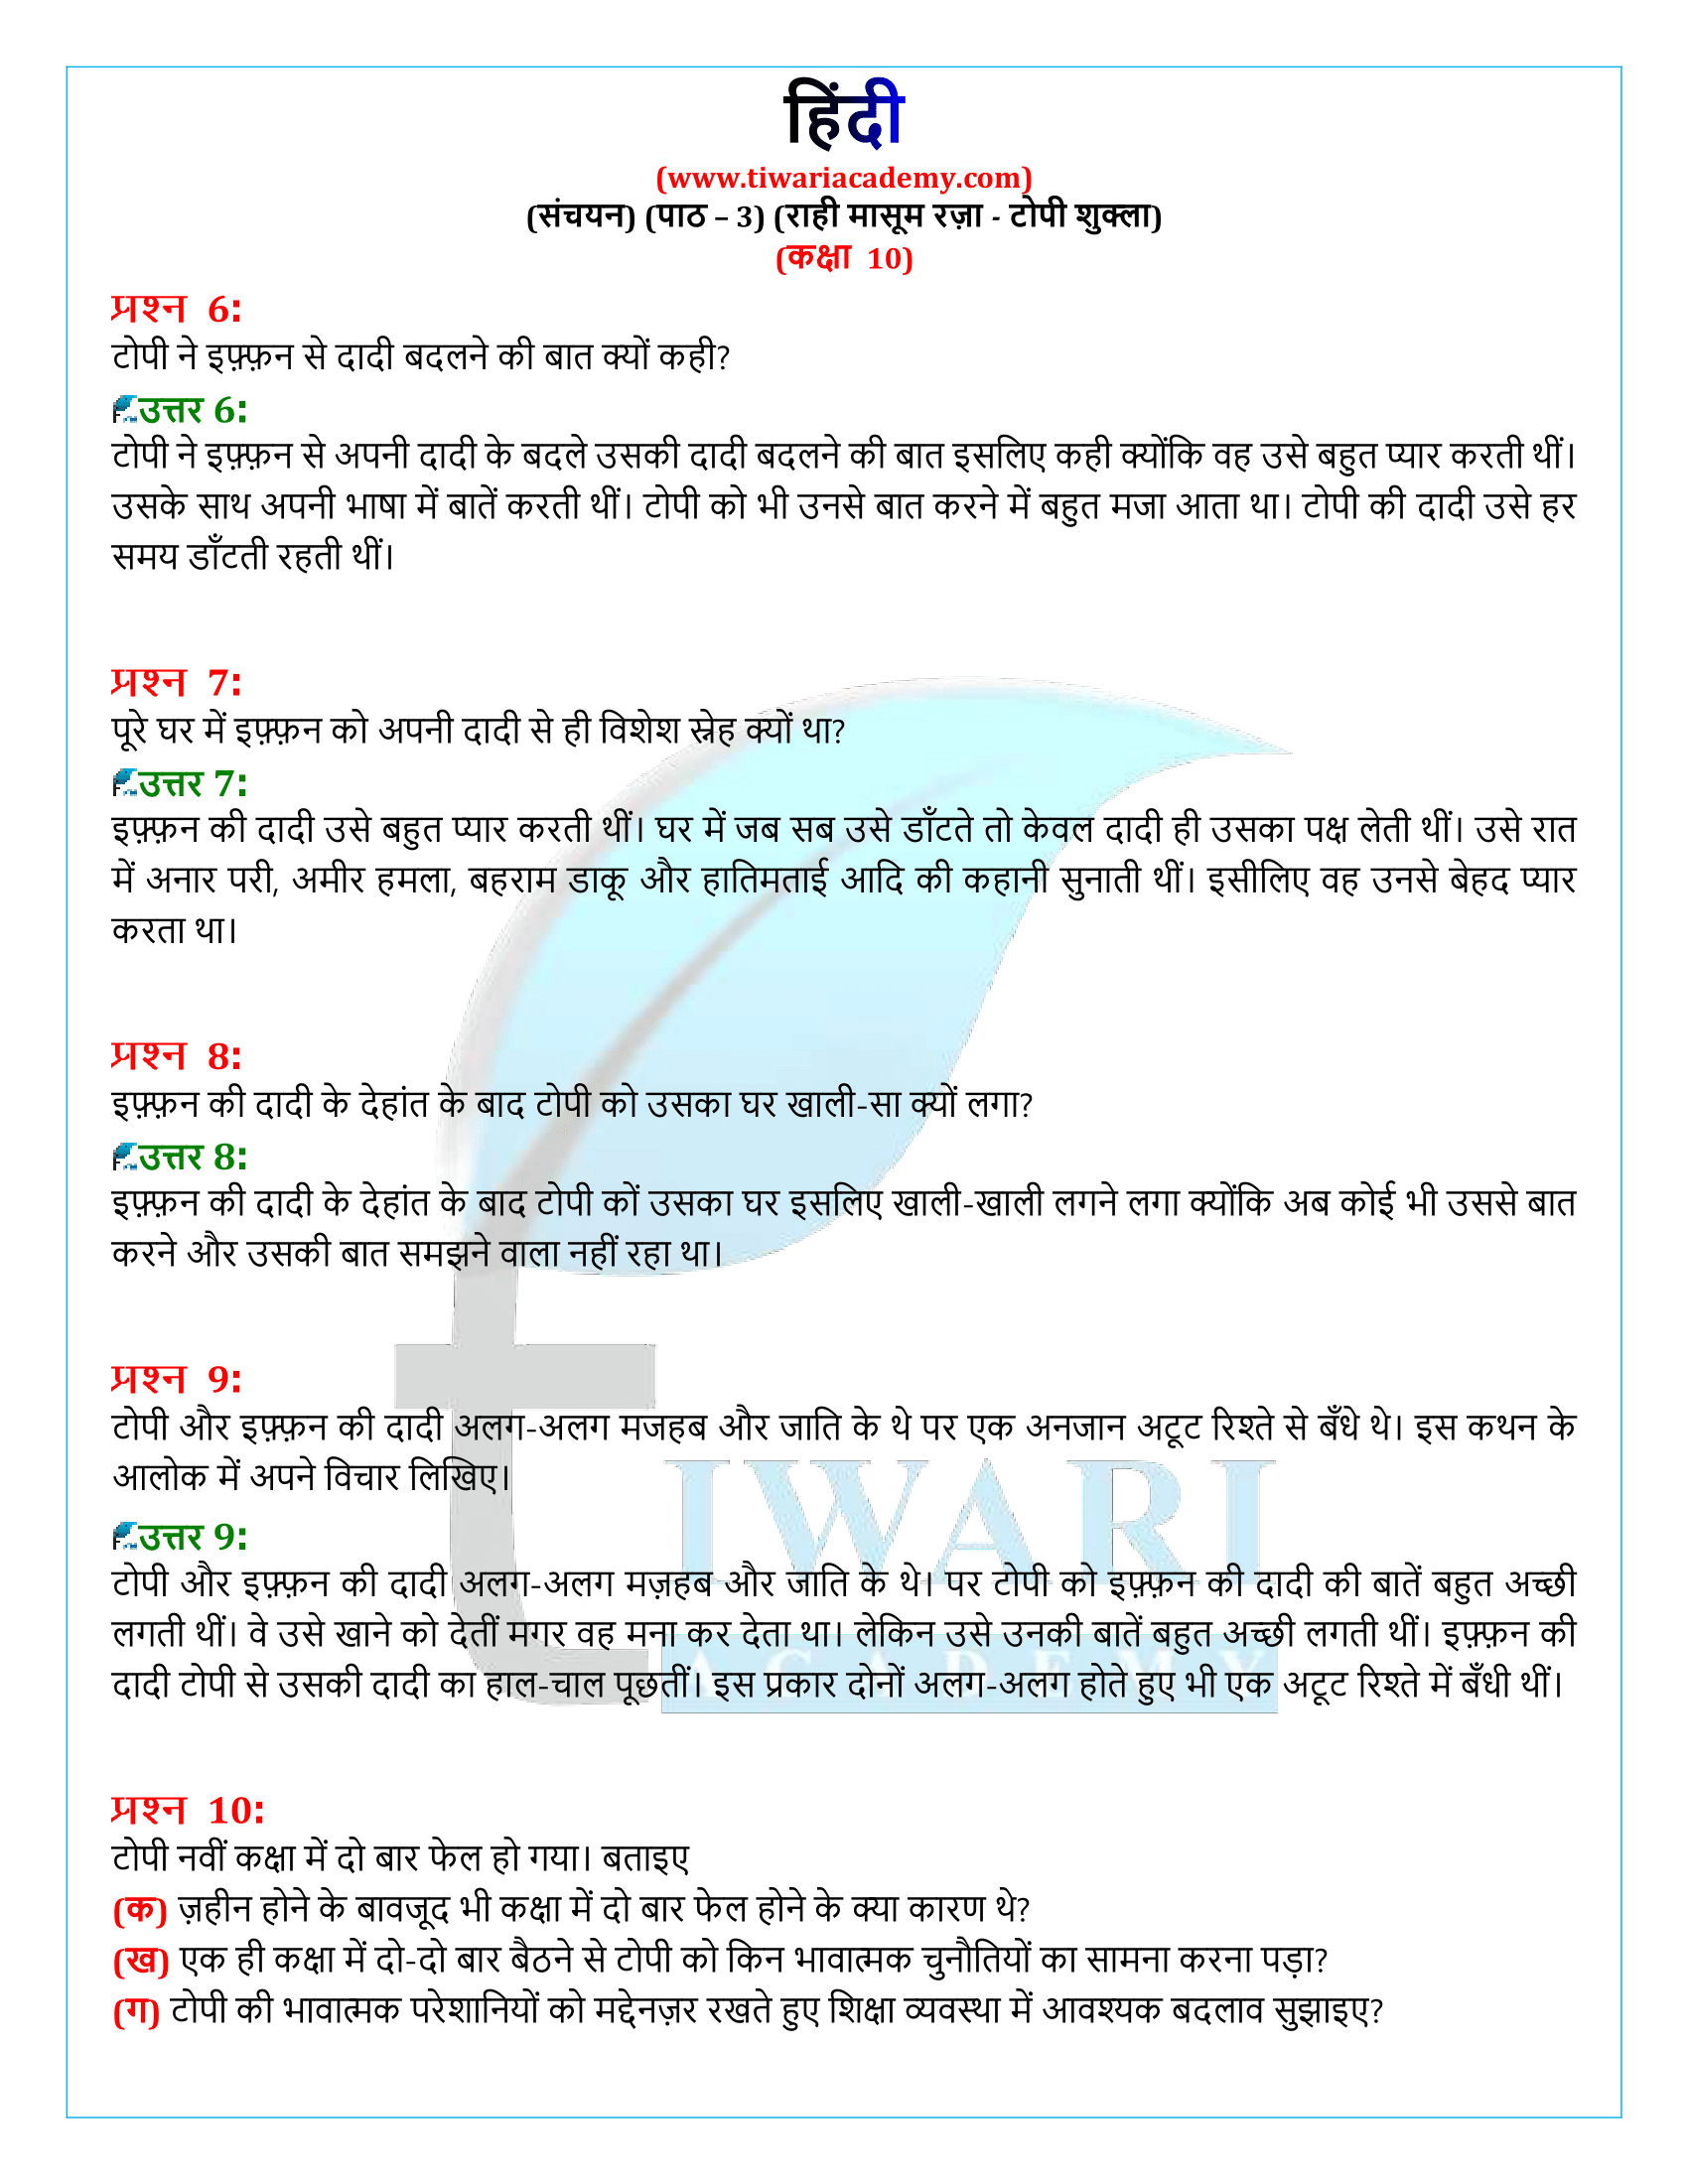 कक्षा 10 हिंदी संचयन अध्याय 3 सलूशन